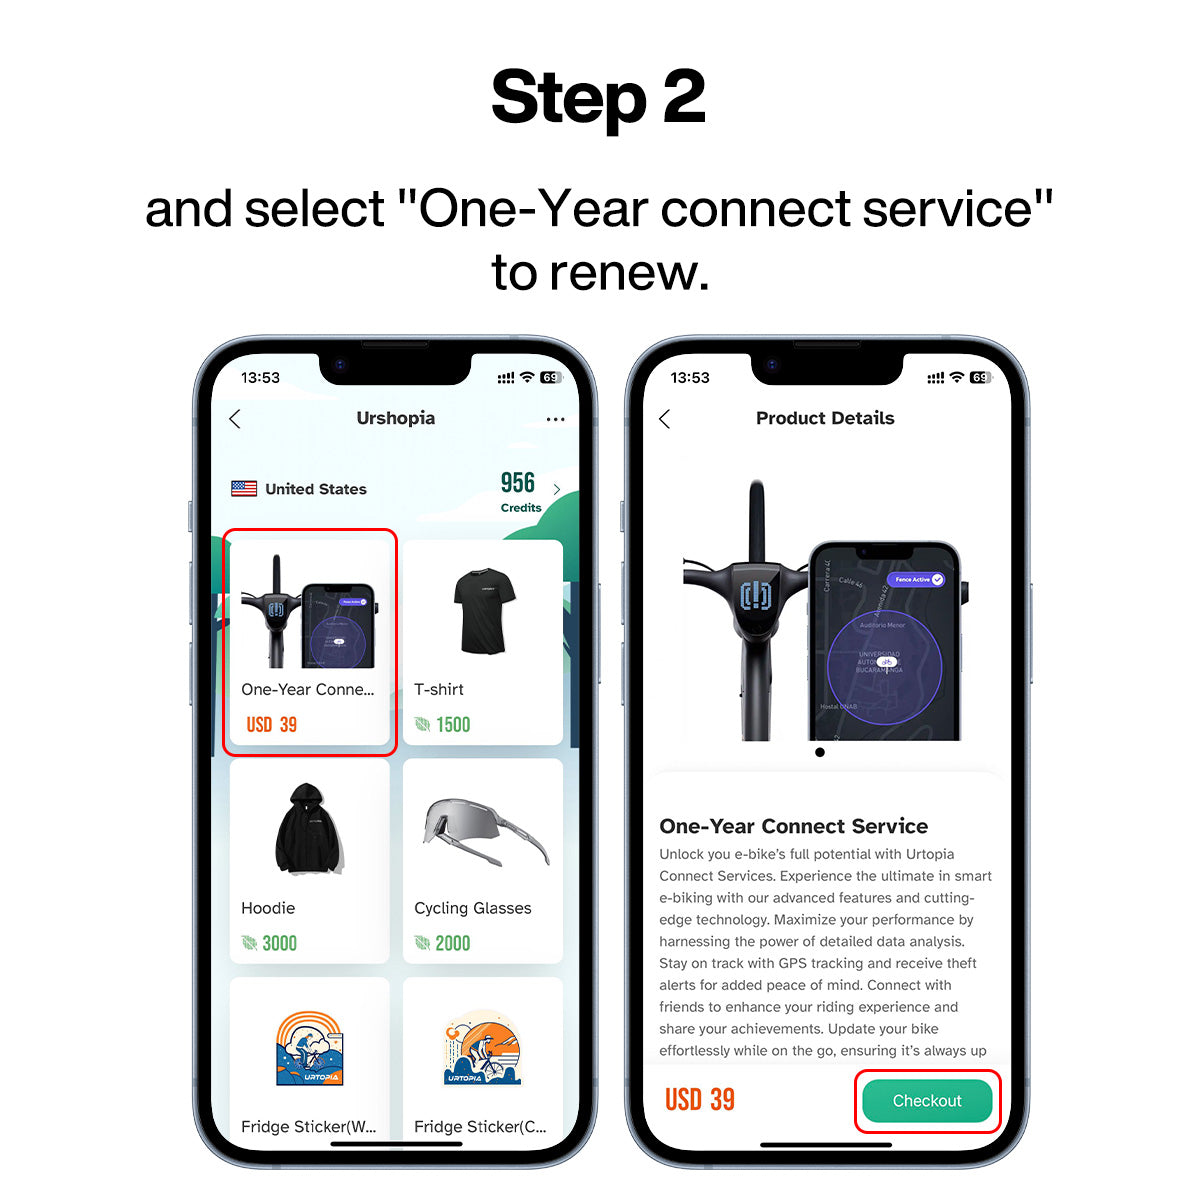 Ein Jahr Connect-Service